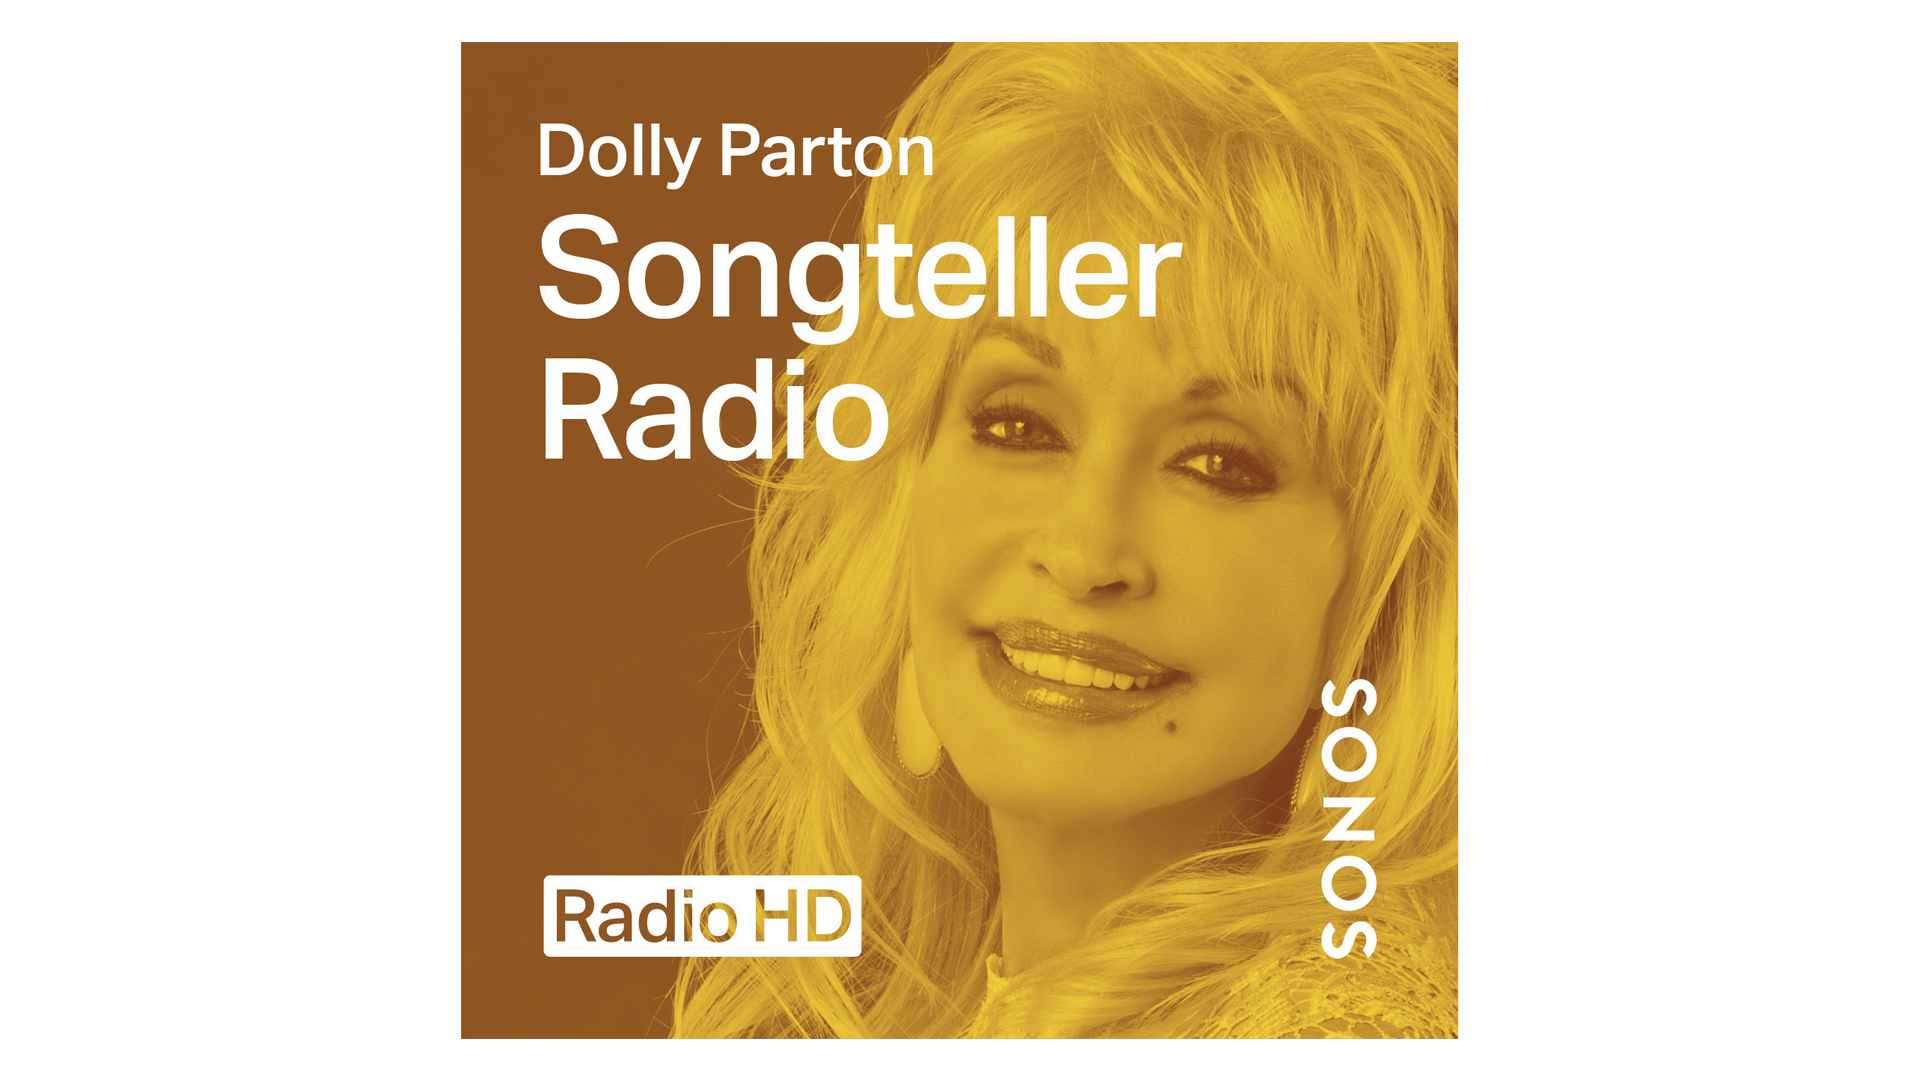 Biểu ngữ cho chương trình 'Songteller Radio' của Dolly Parton.